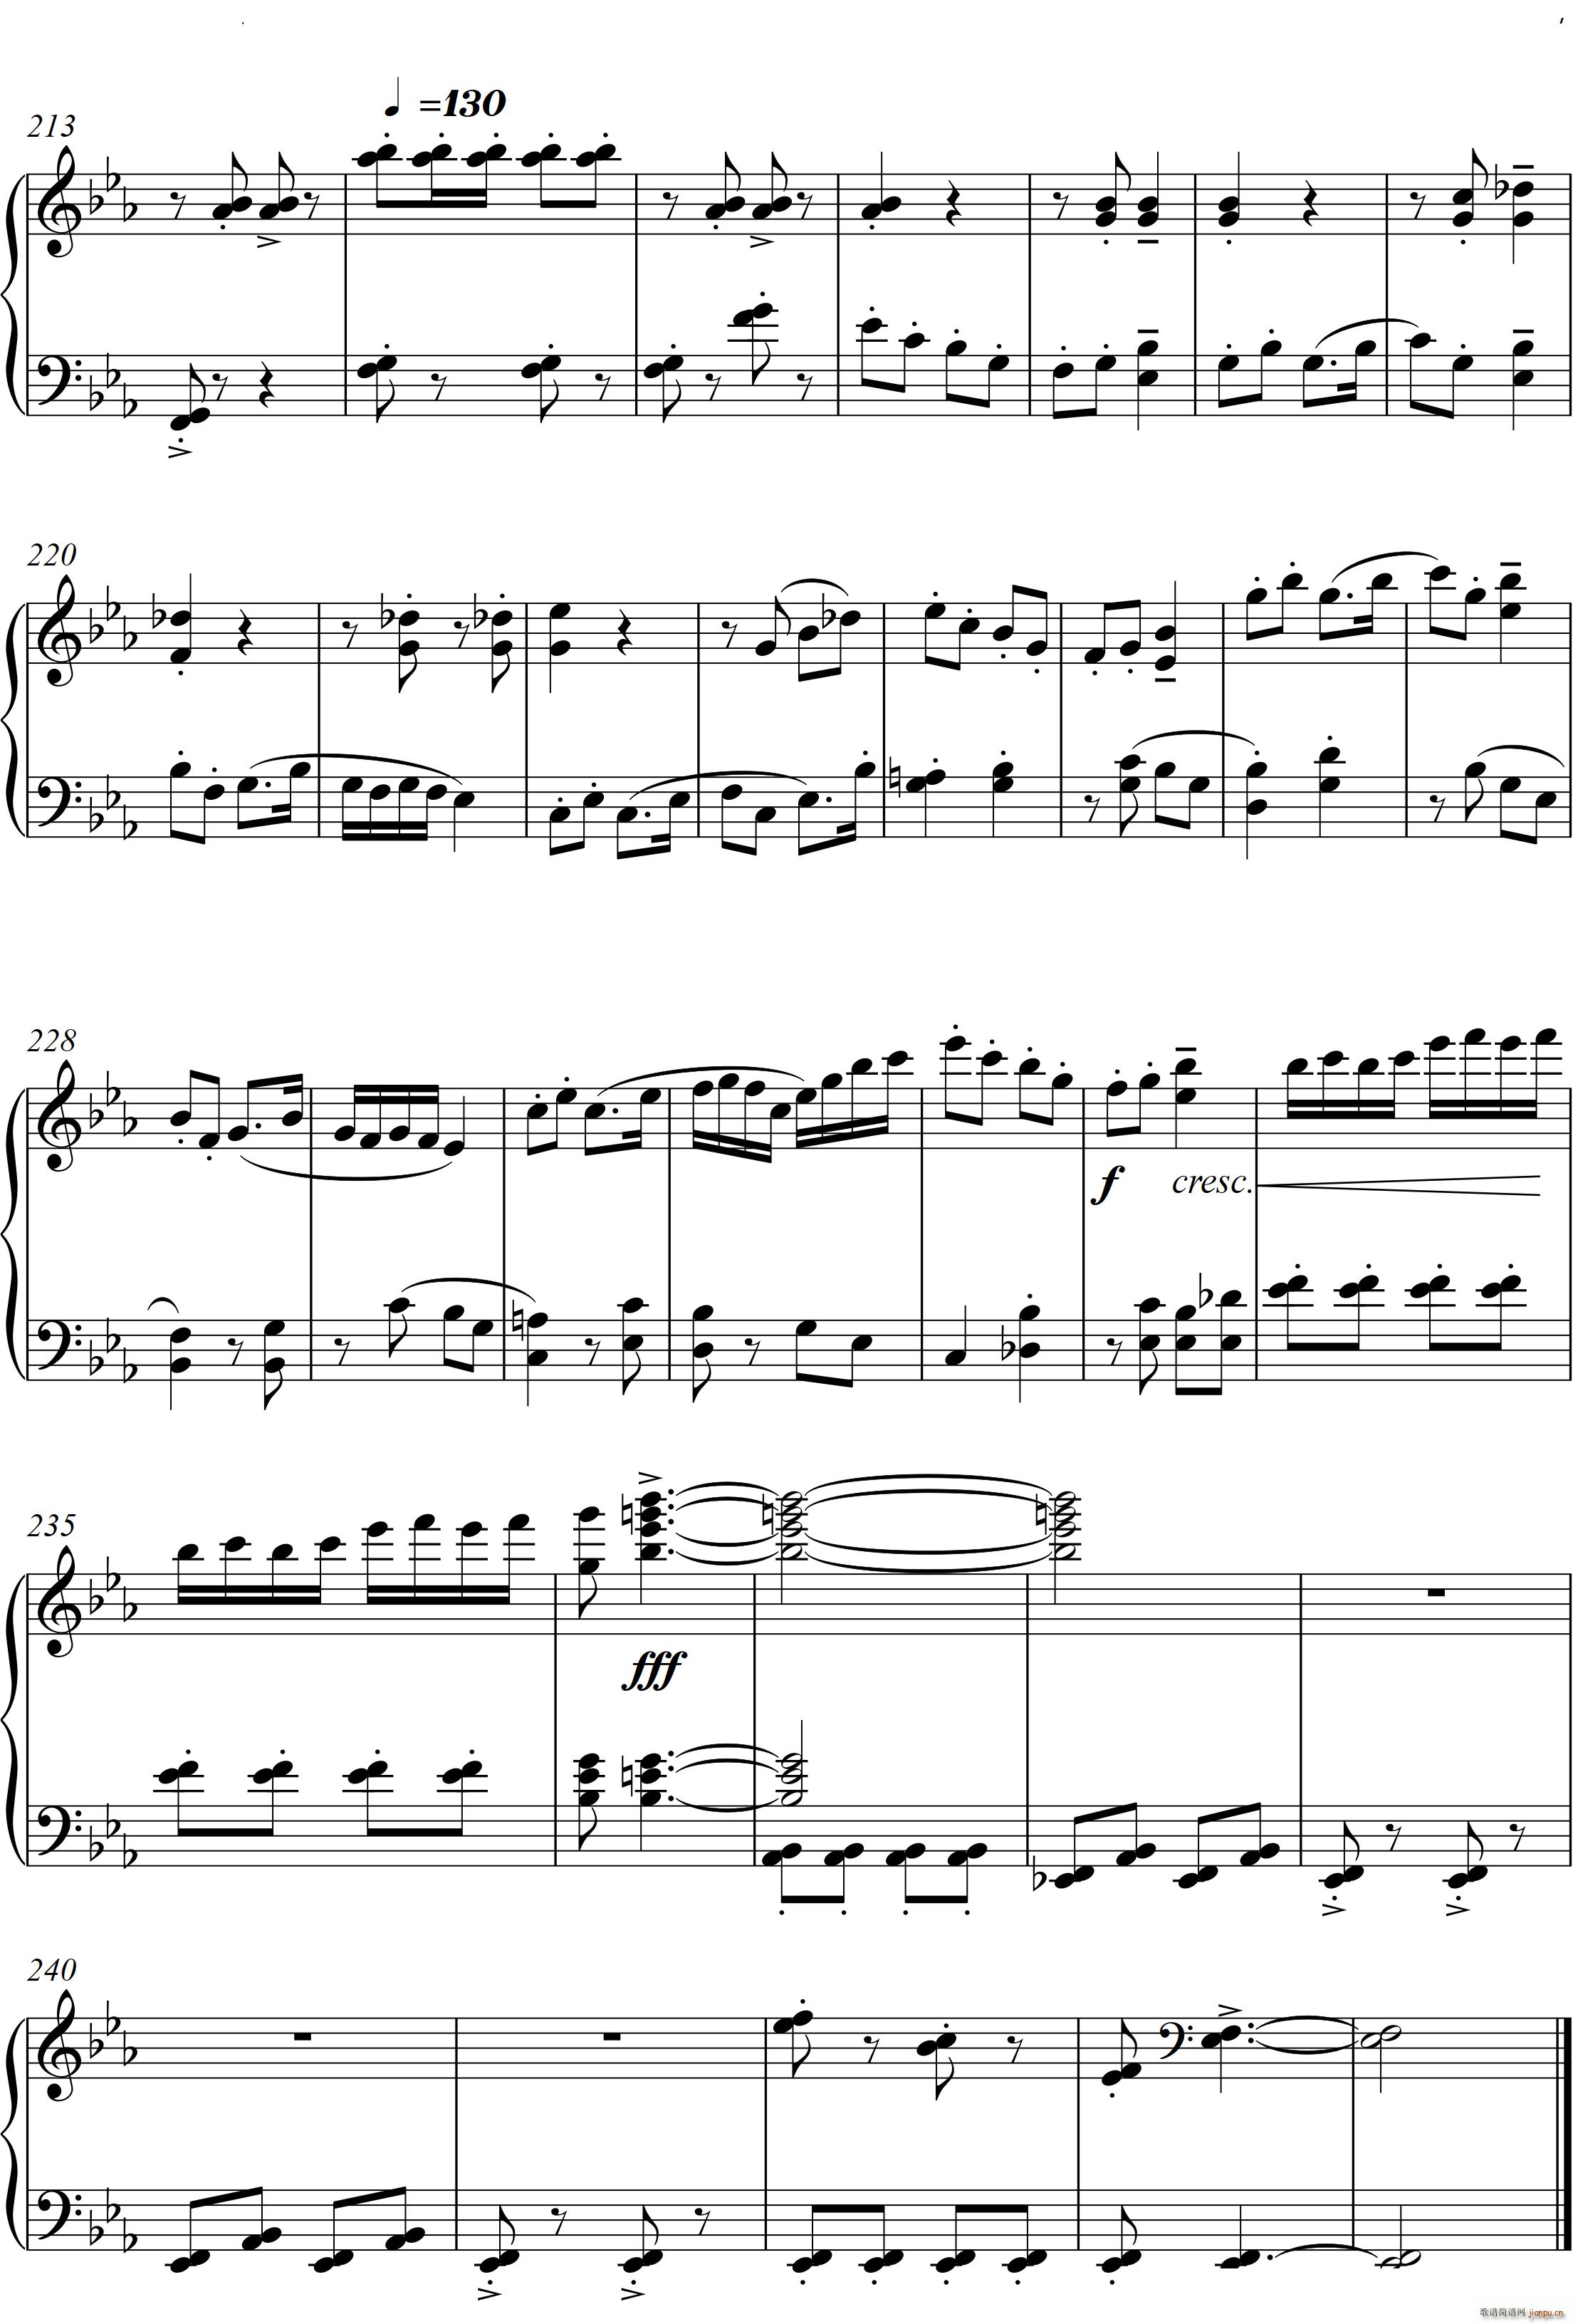 第23钢琴奏鸣曲 高甲缘 Piano Sonata No 23三个乐章(钢琴谱)8